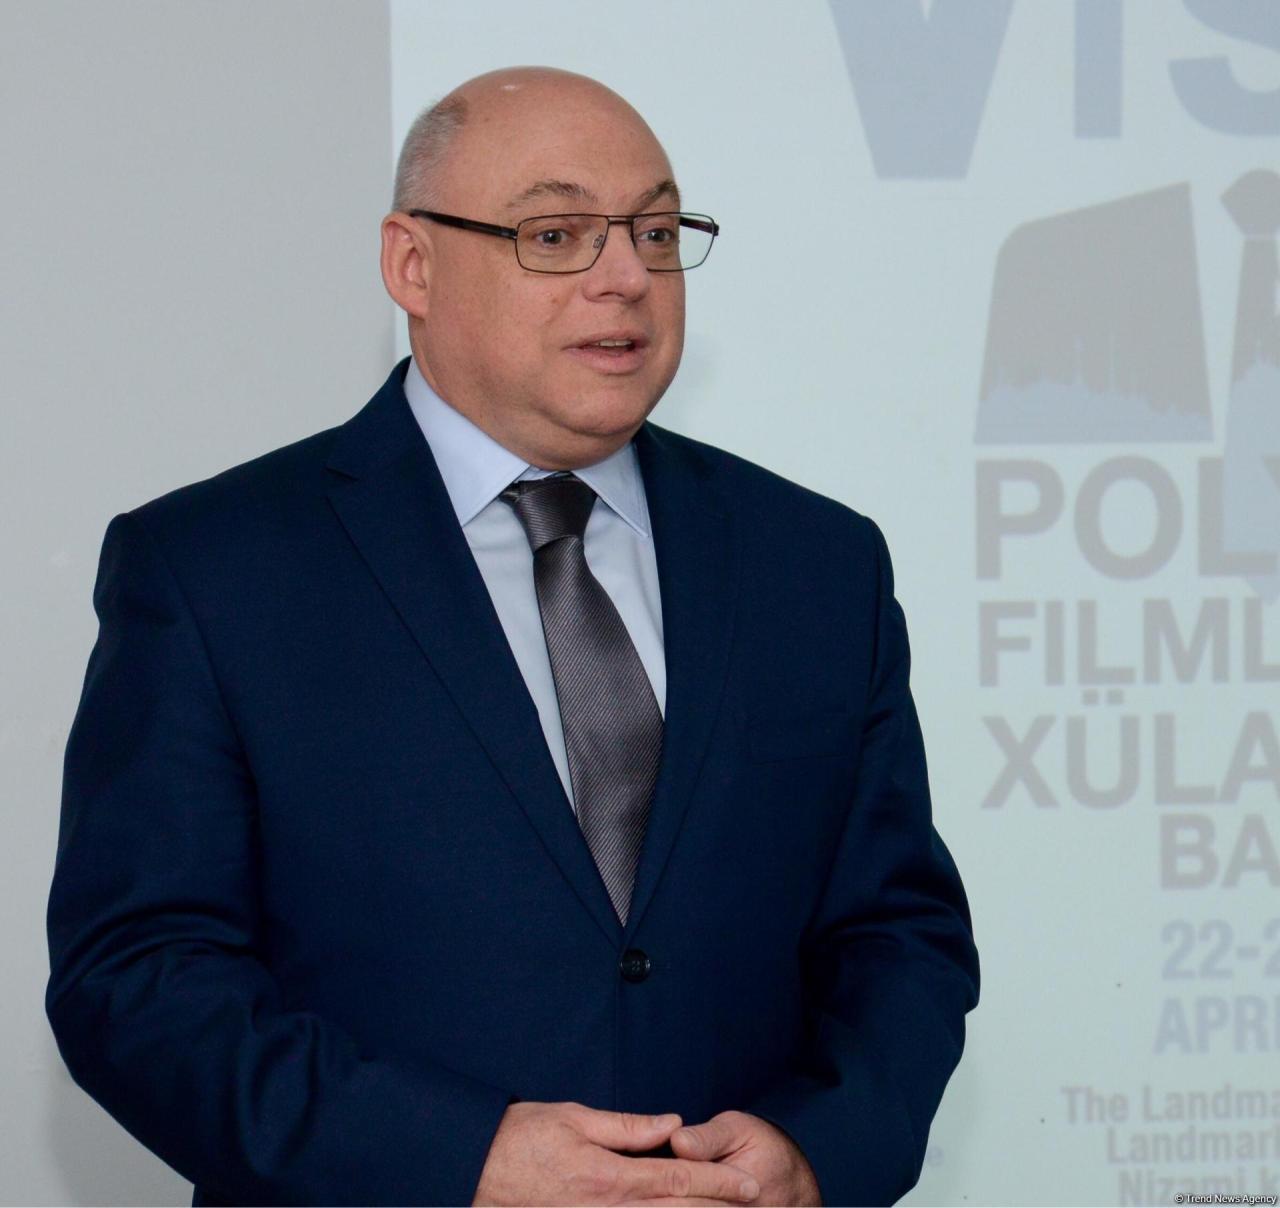 Шедевры польского кинематографа в Баку: открытие фестиваля "Висла"